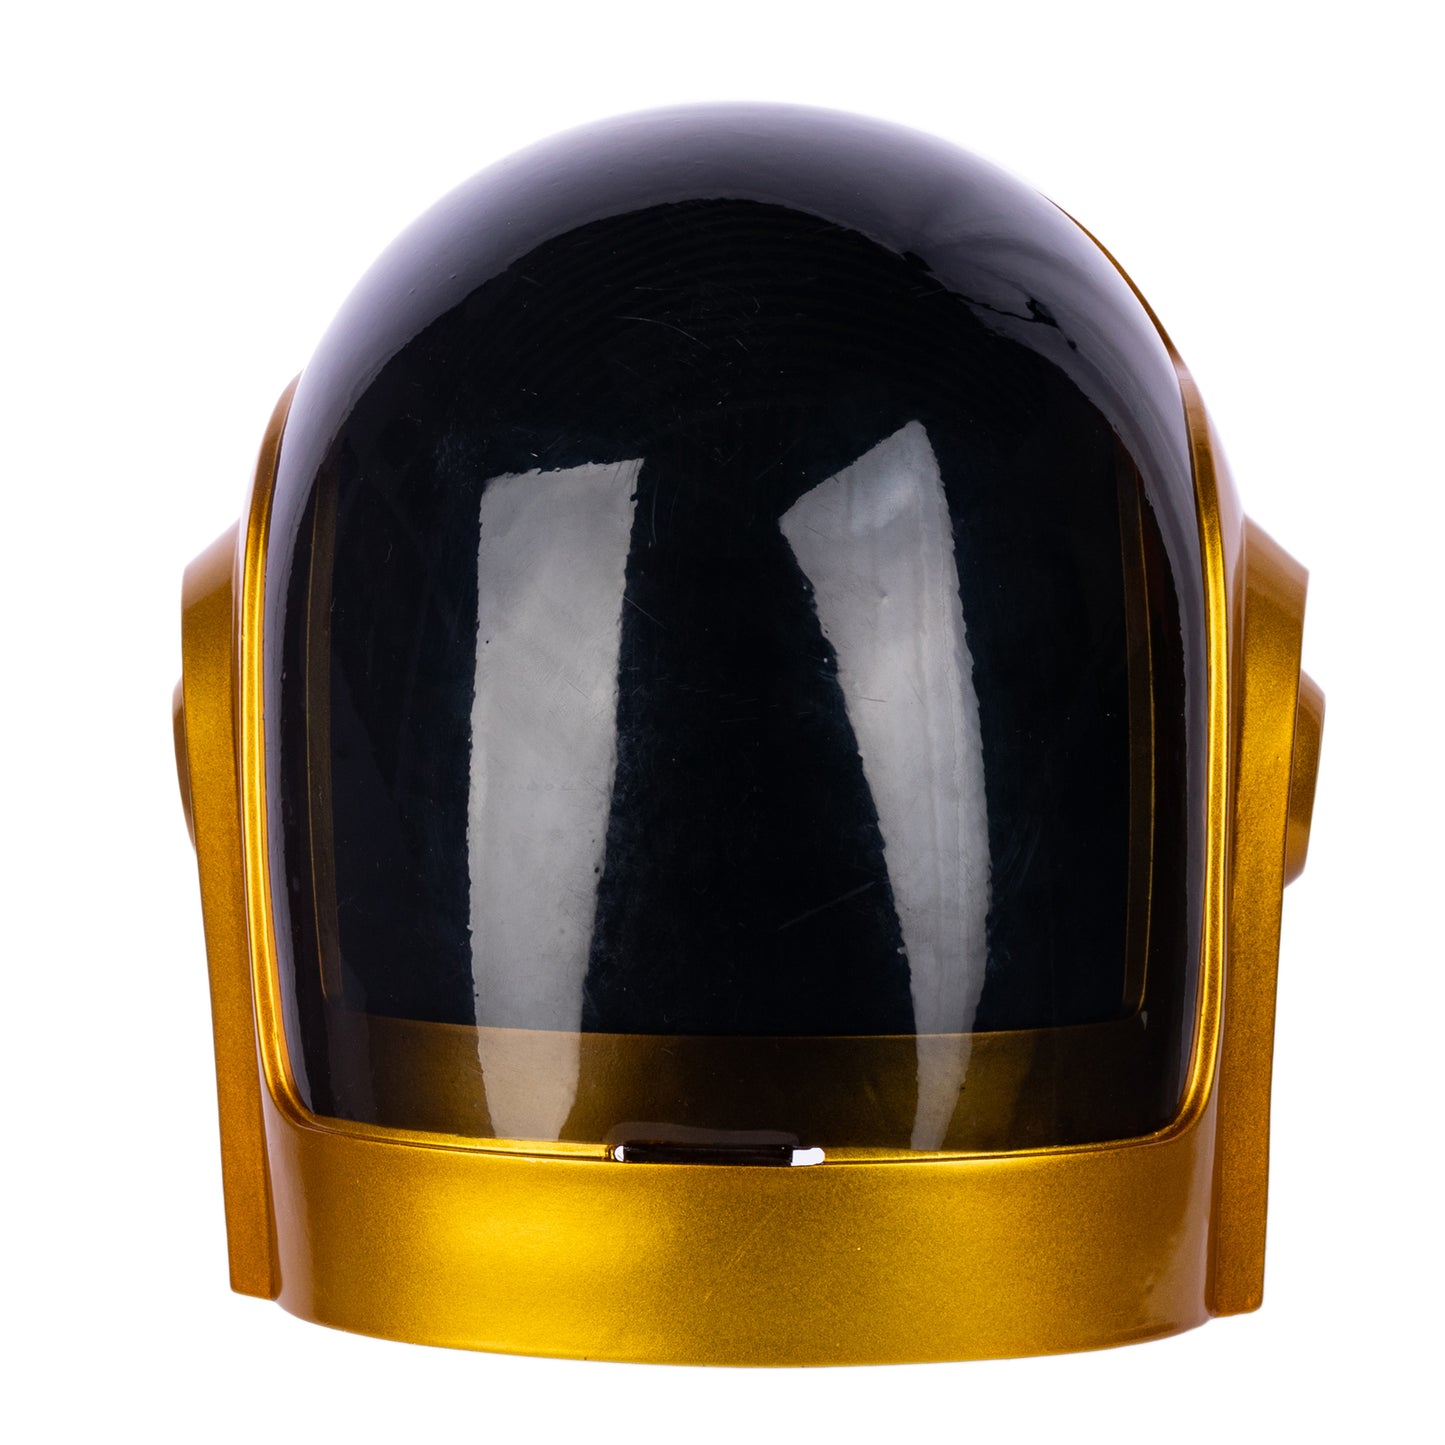 Xcoser Daft Punk Guy-Manuel Vollkopf helm 1:1 Cosplay Maske Harz Requisiten Goldenes Halloween